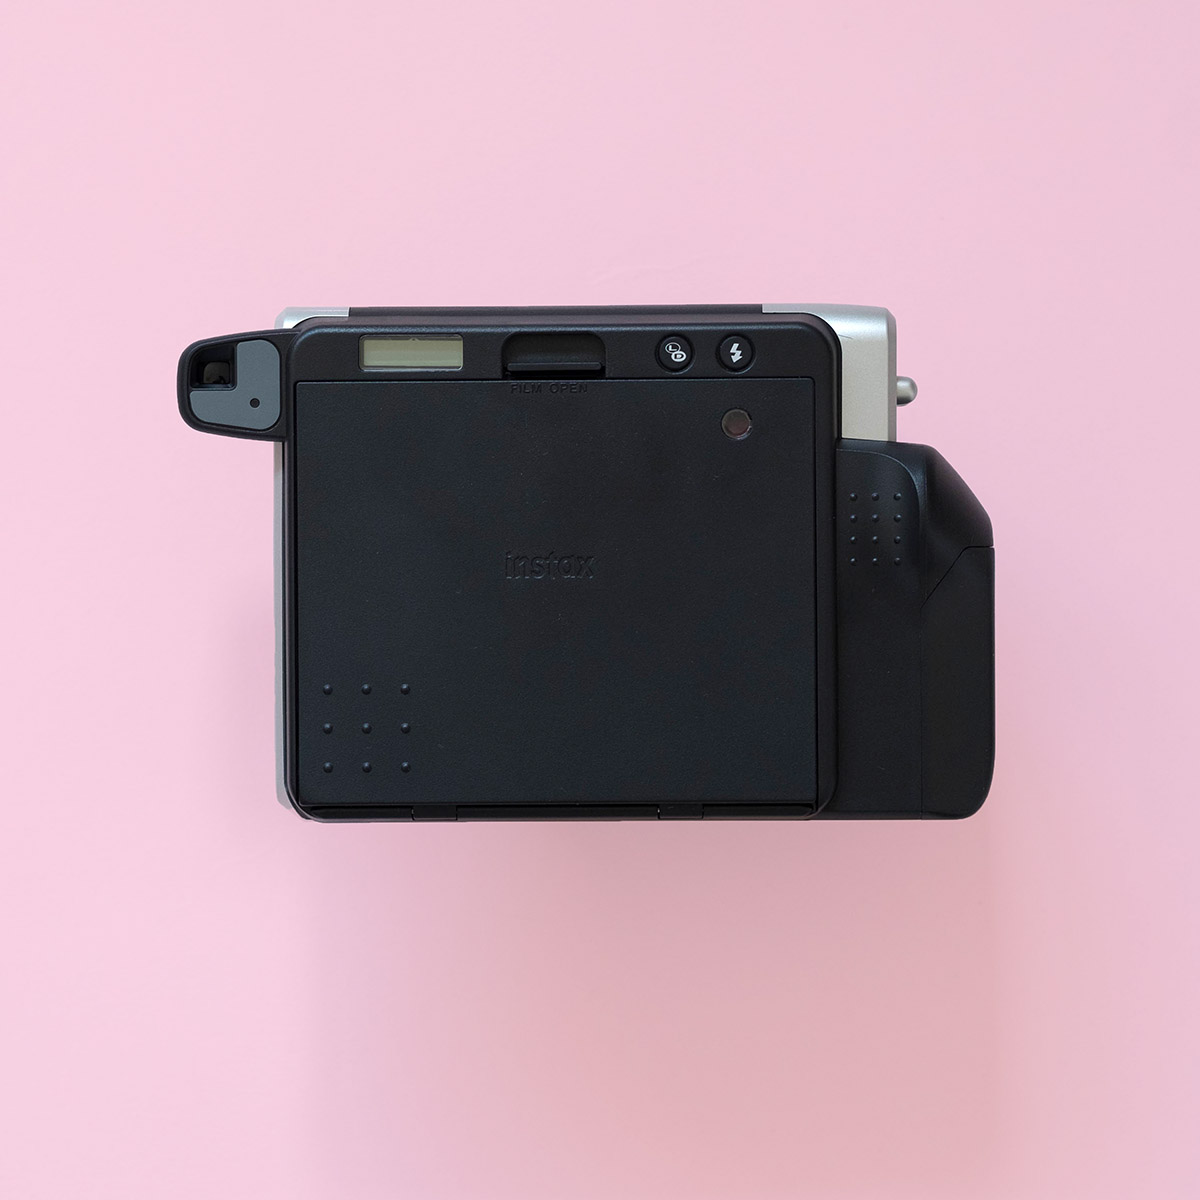 Polaroid Go Instant Film Camera - Parallax Photographic Coop